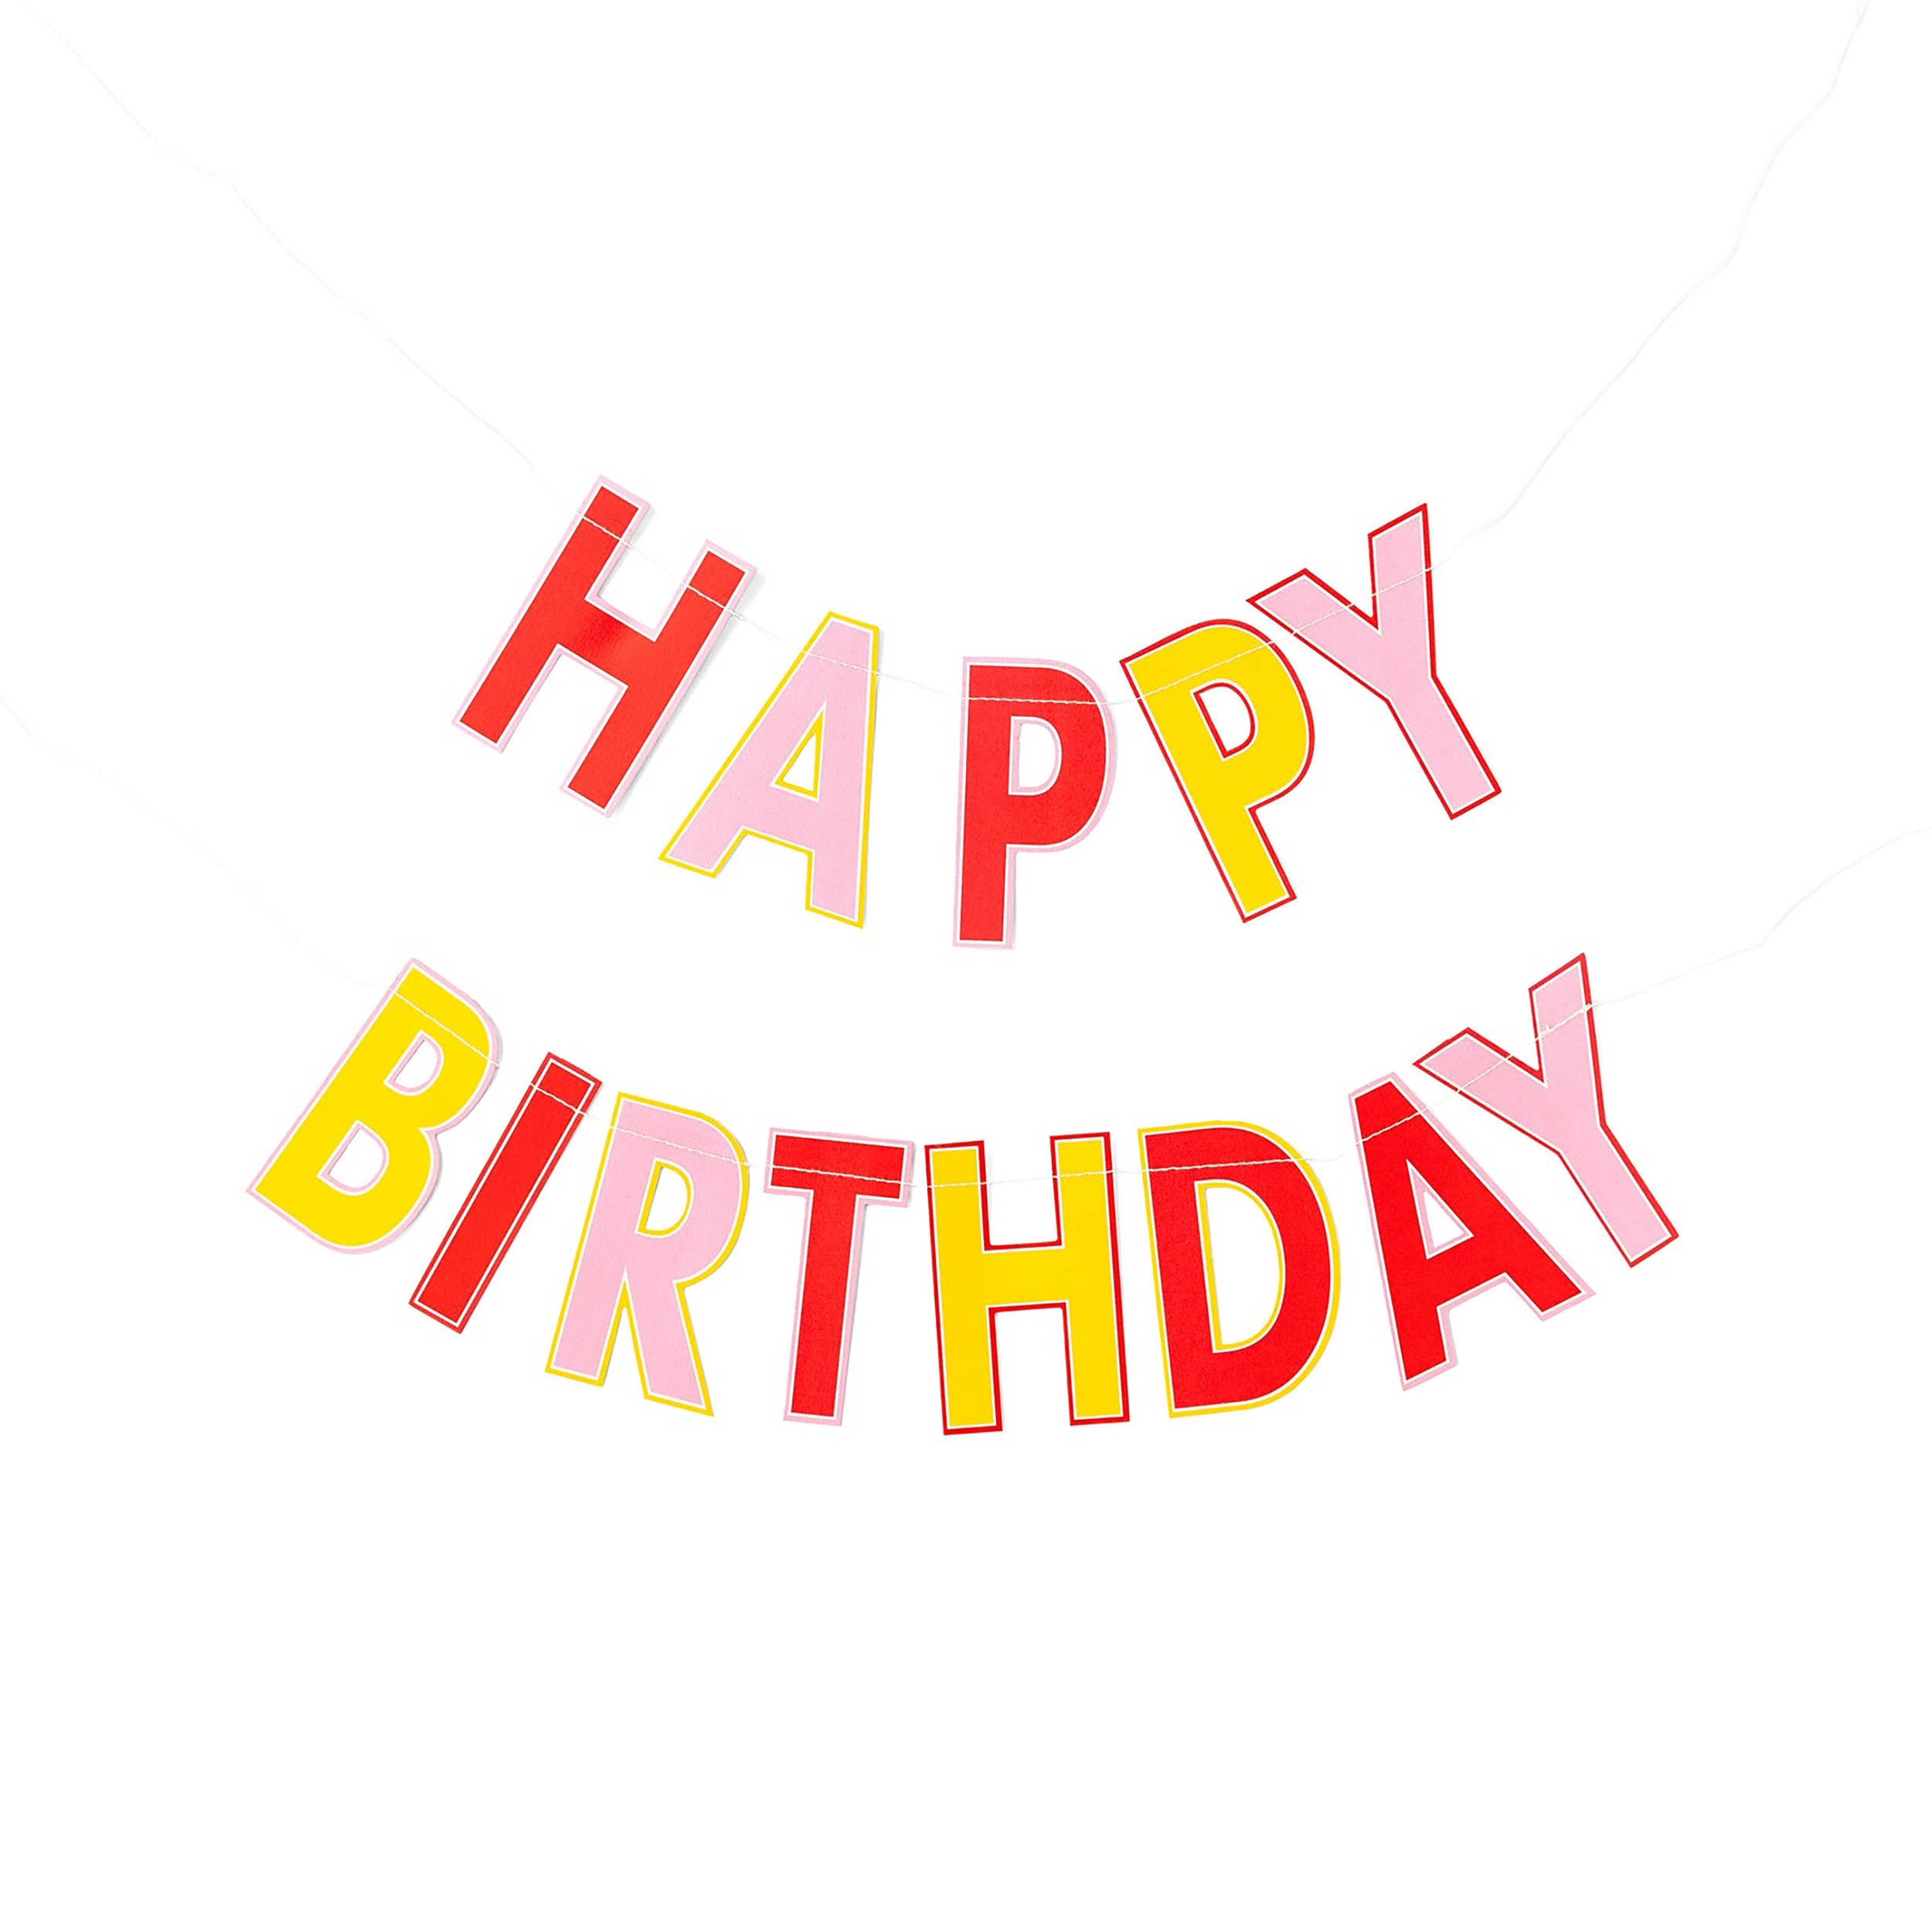 Decoraciones de cumpleaños número 6 para niñas, globos de feliz cumpleaños  rosa y blanco, suministros de fiesta de 6º cumpleaños para hija, sus hijos